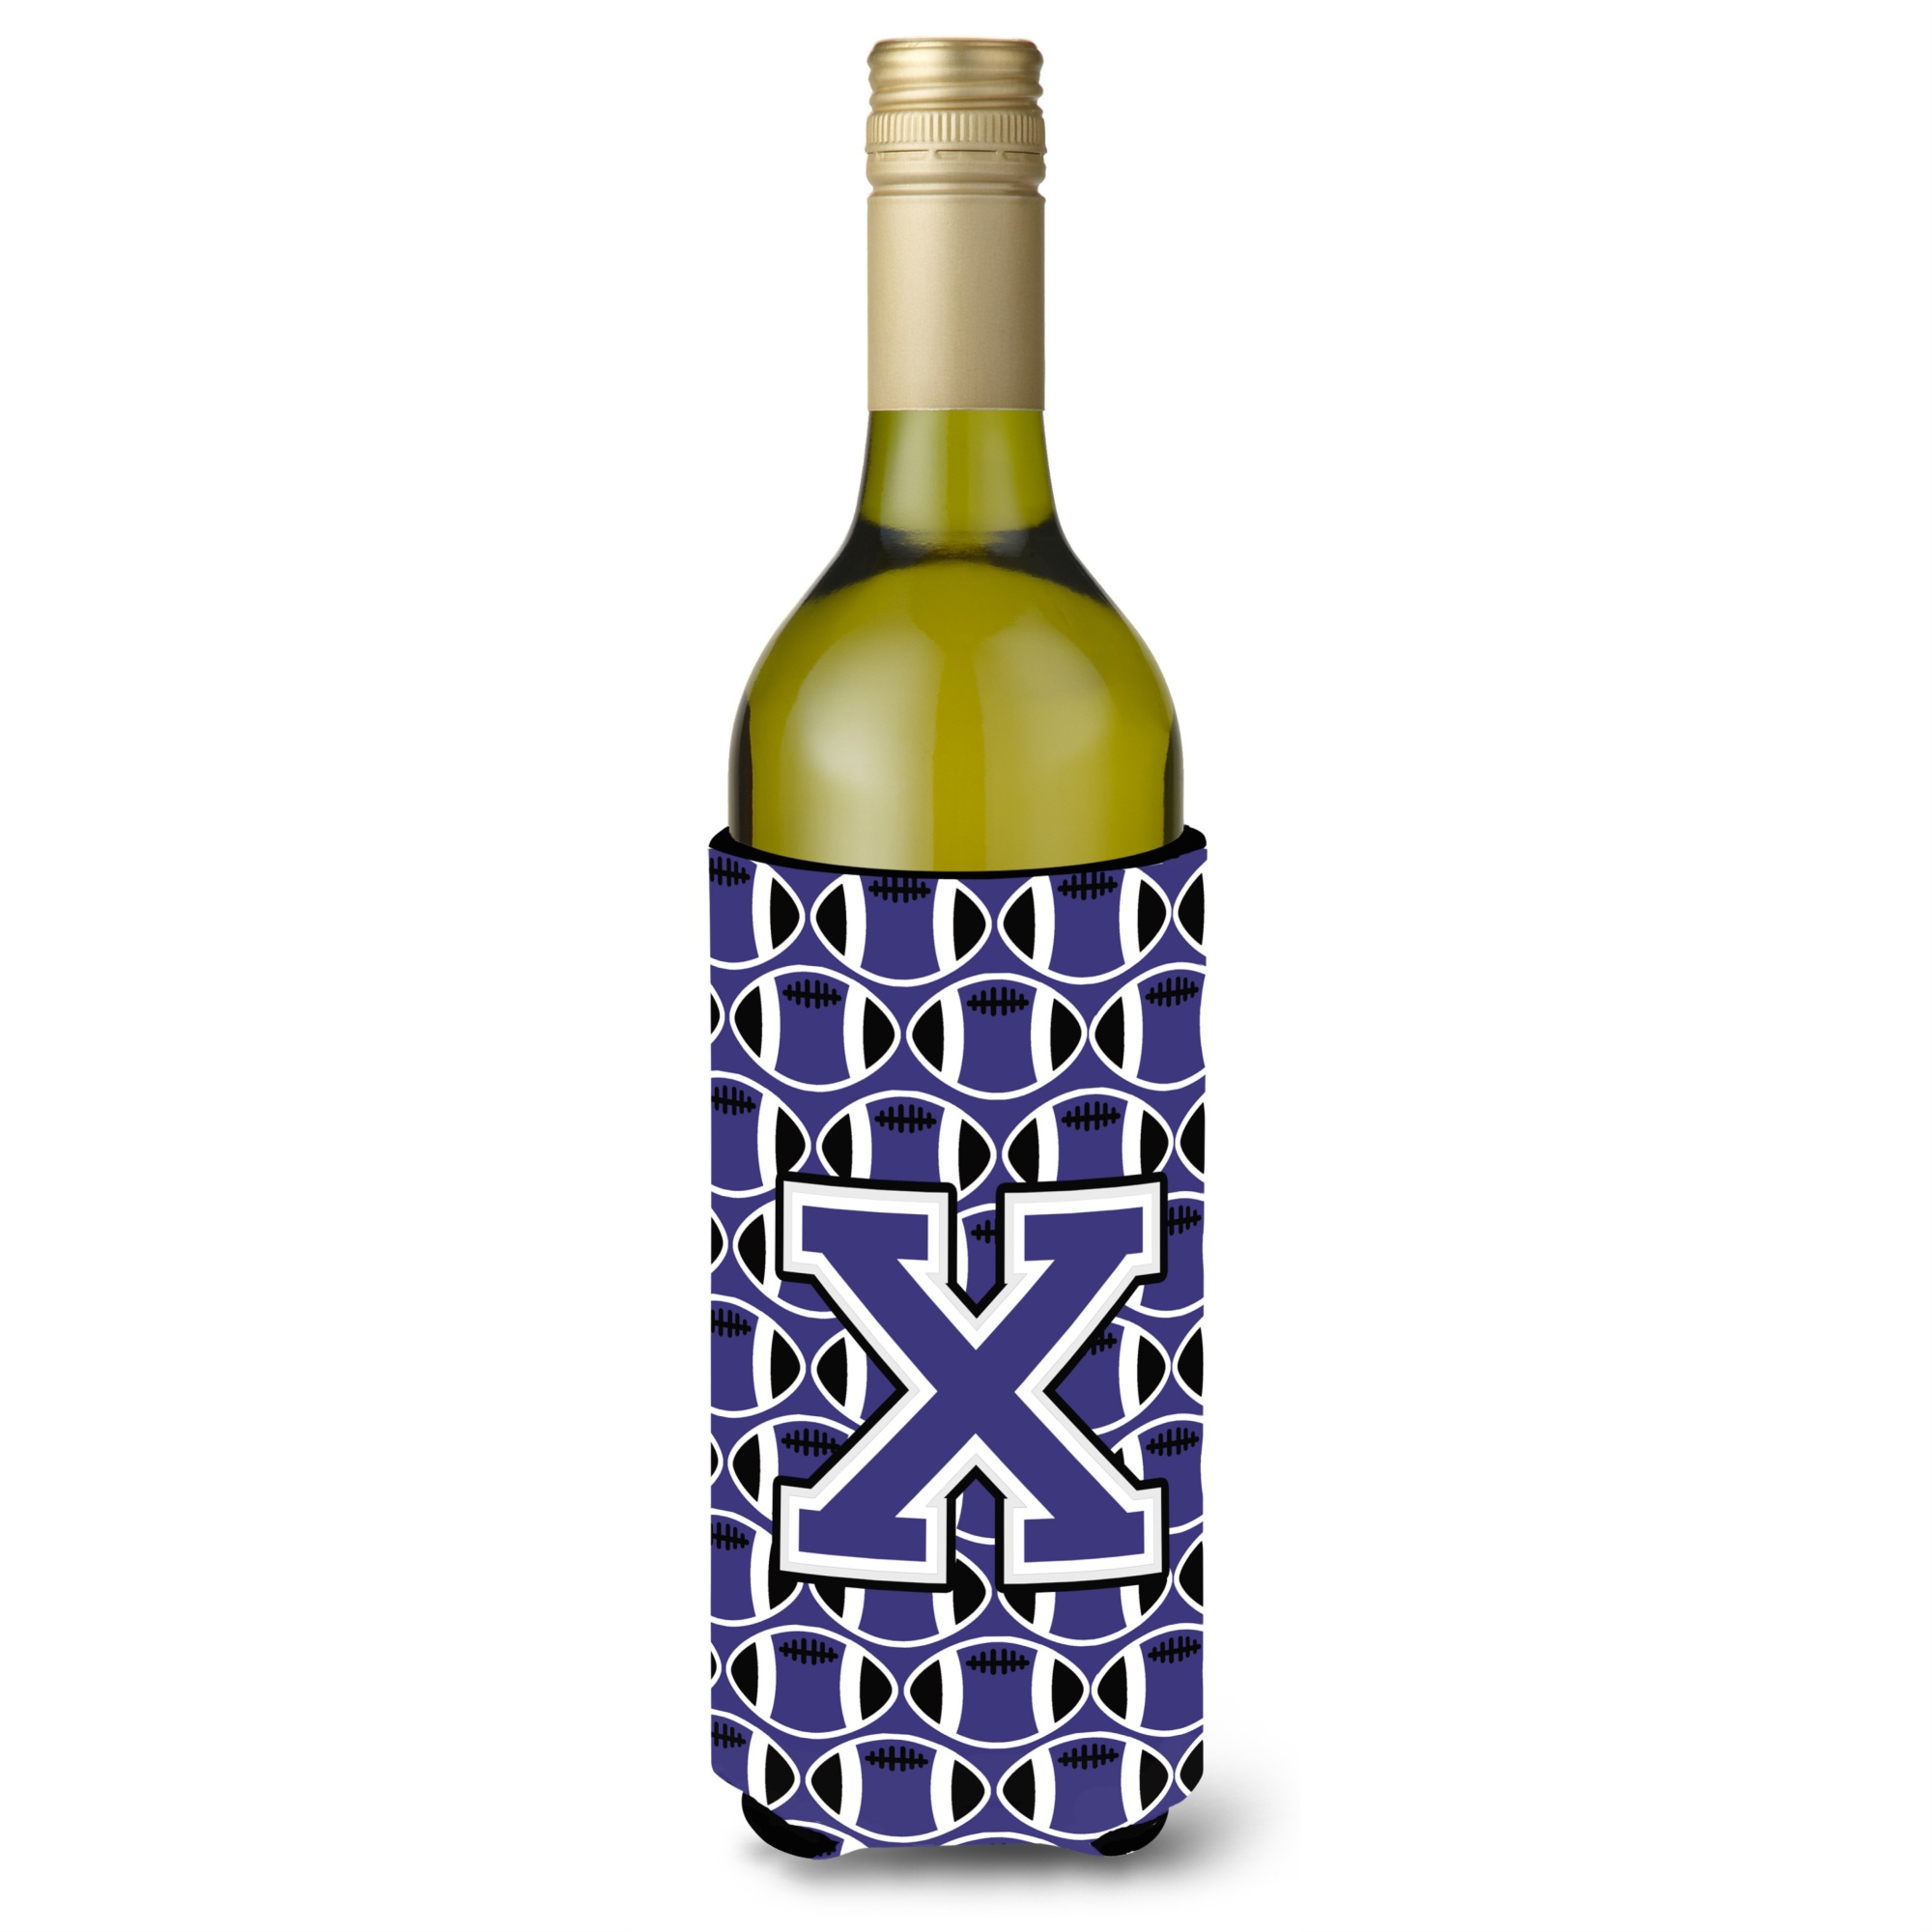 Caroline's Treasures Letter X Football Purple and White Wine Bottle Beverage Insulator Hugger CJ1068-XLITERK